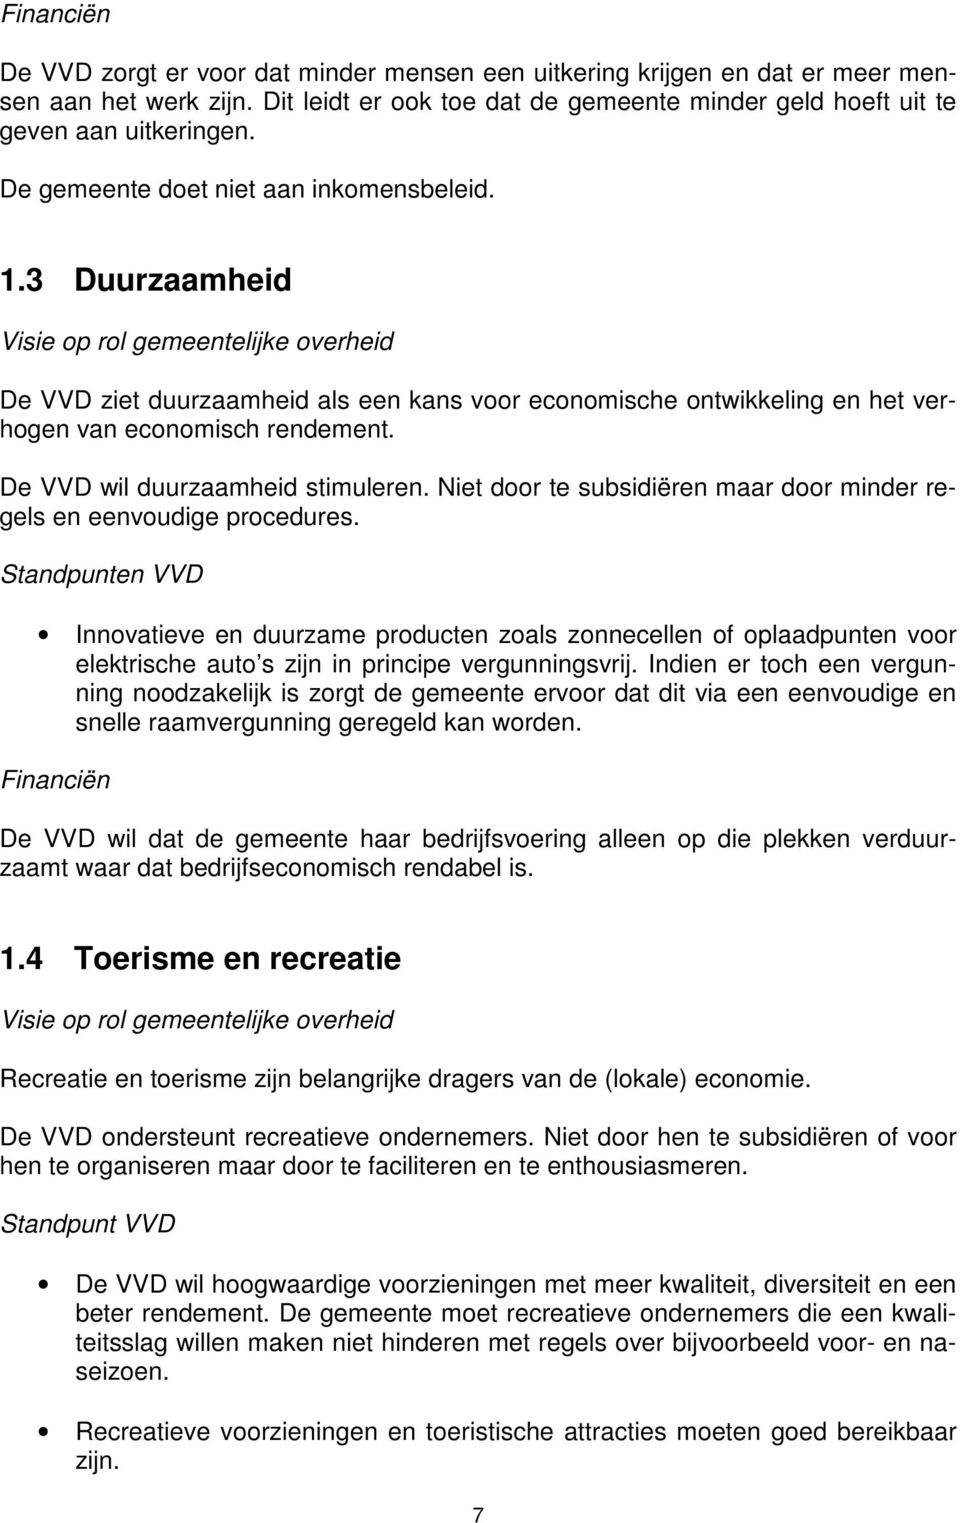 De VVD wil duurzaamheid stimuleren. Niet door te subsidiëren maar door minder regels en eenvoudige procedures.